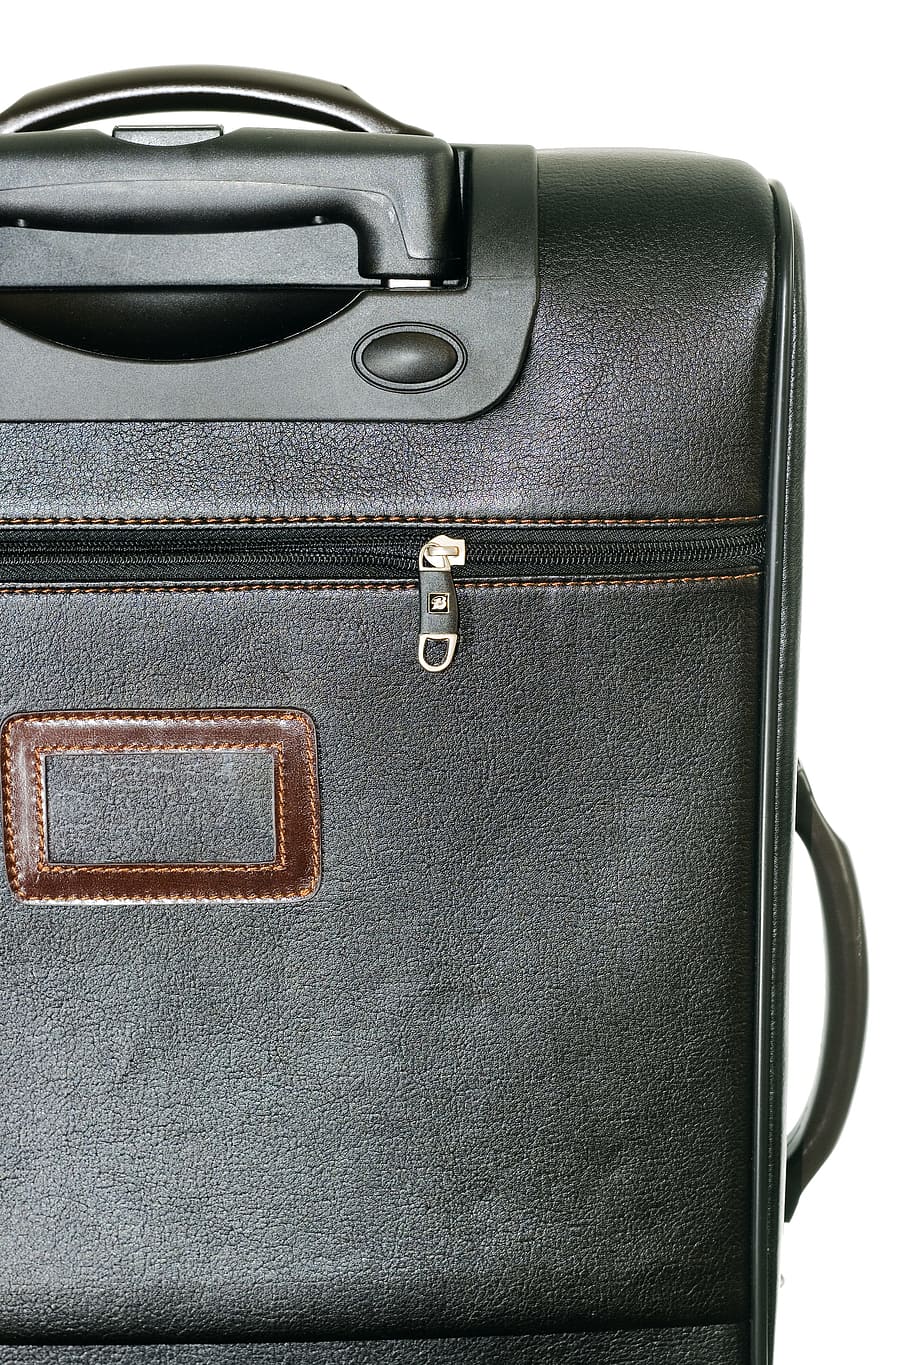 bag, baggage, big, boarding, booking, briefcase, business, case, color, concept